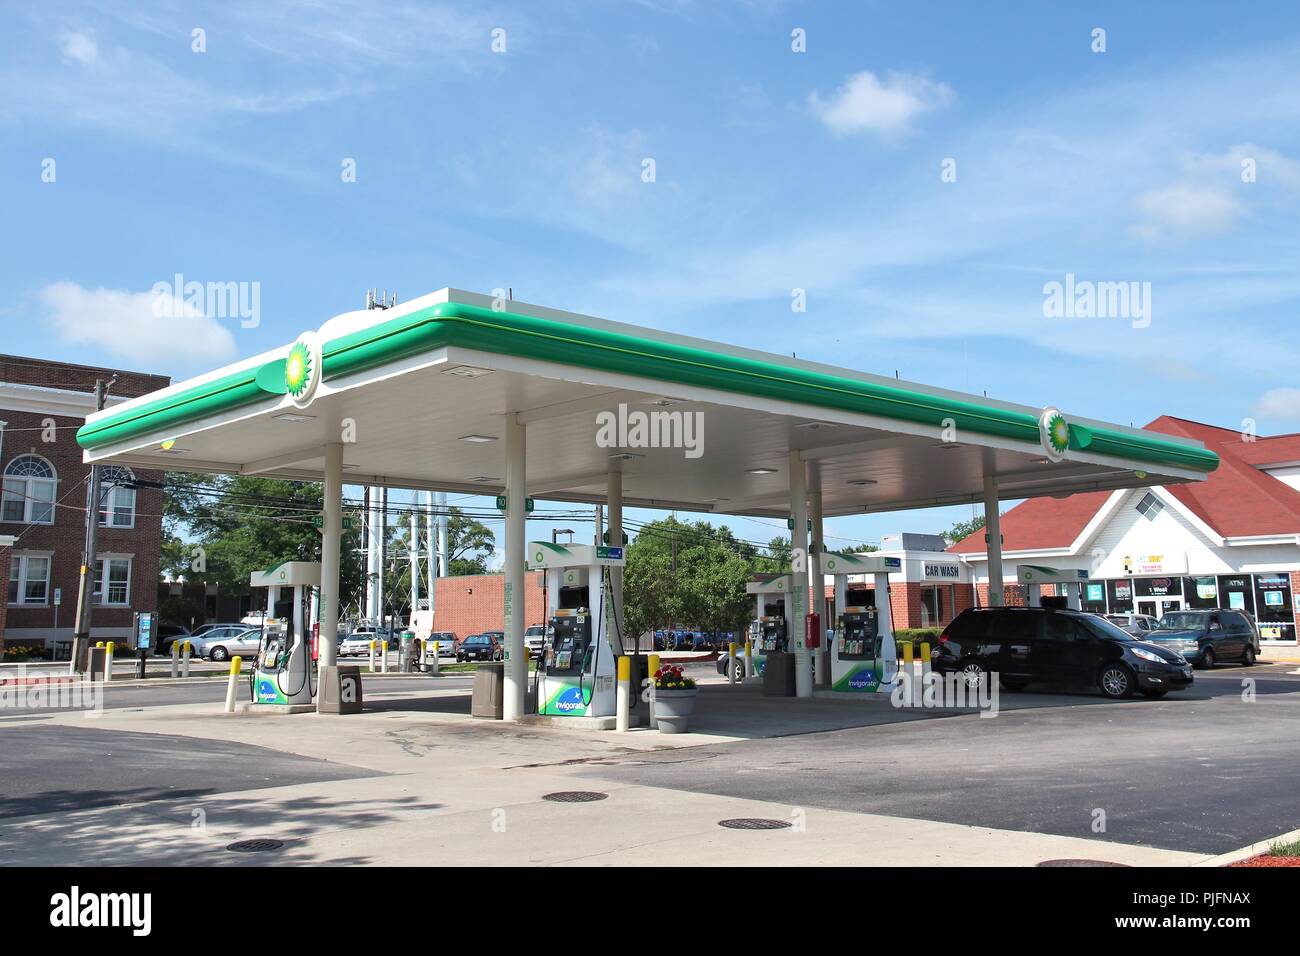 VILLA Park, Stati Uniti d'America - 27 giugno 2013: Driver riempire le loro auto a BP Gas Station in Villa Park, IL. BP ha 31,3 miliardi di dollari di reddito operativo nel 2013. Foto Stock